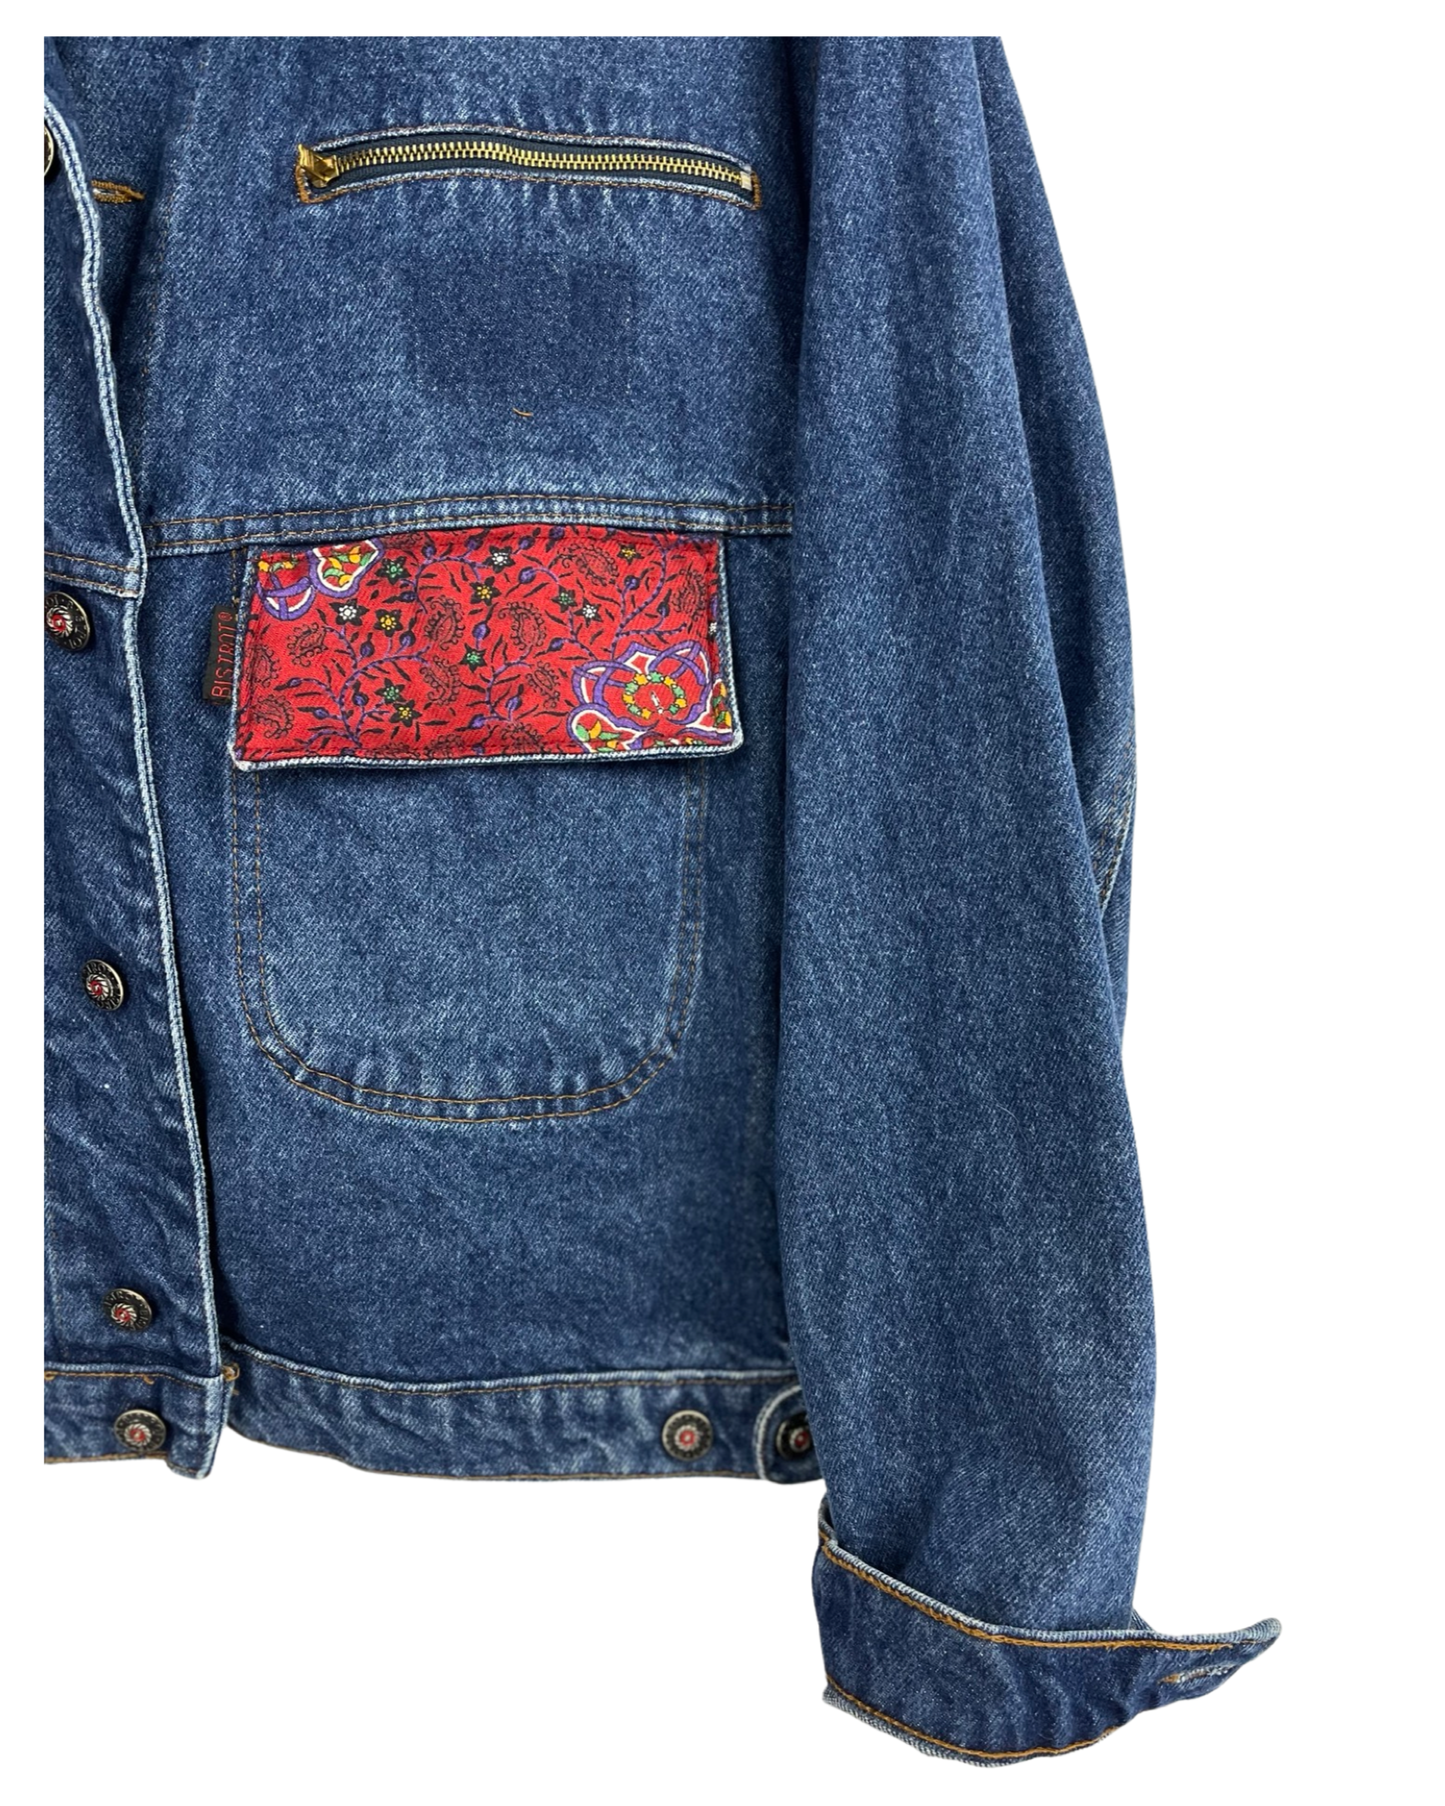 Vintage Indie Denim Jacket